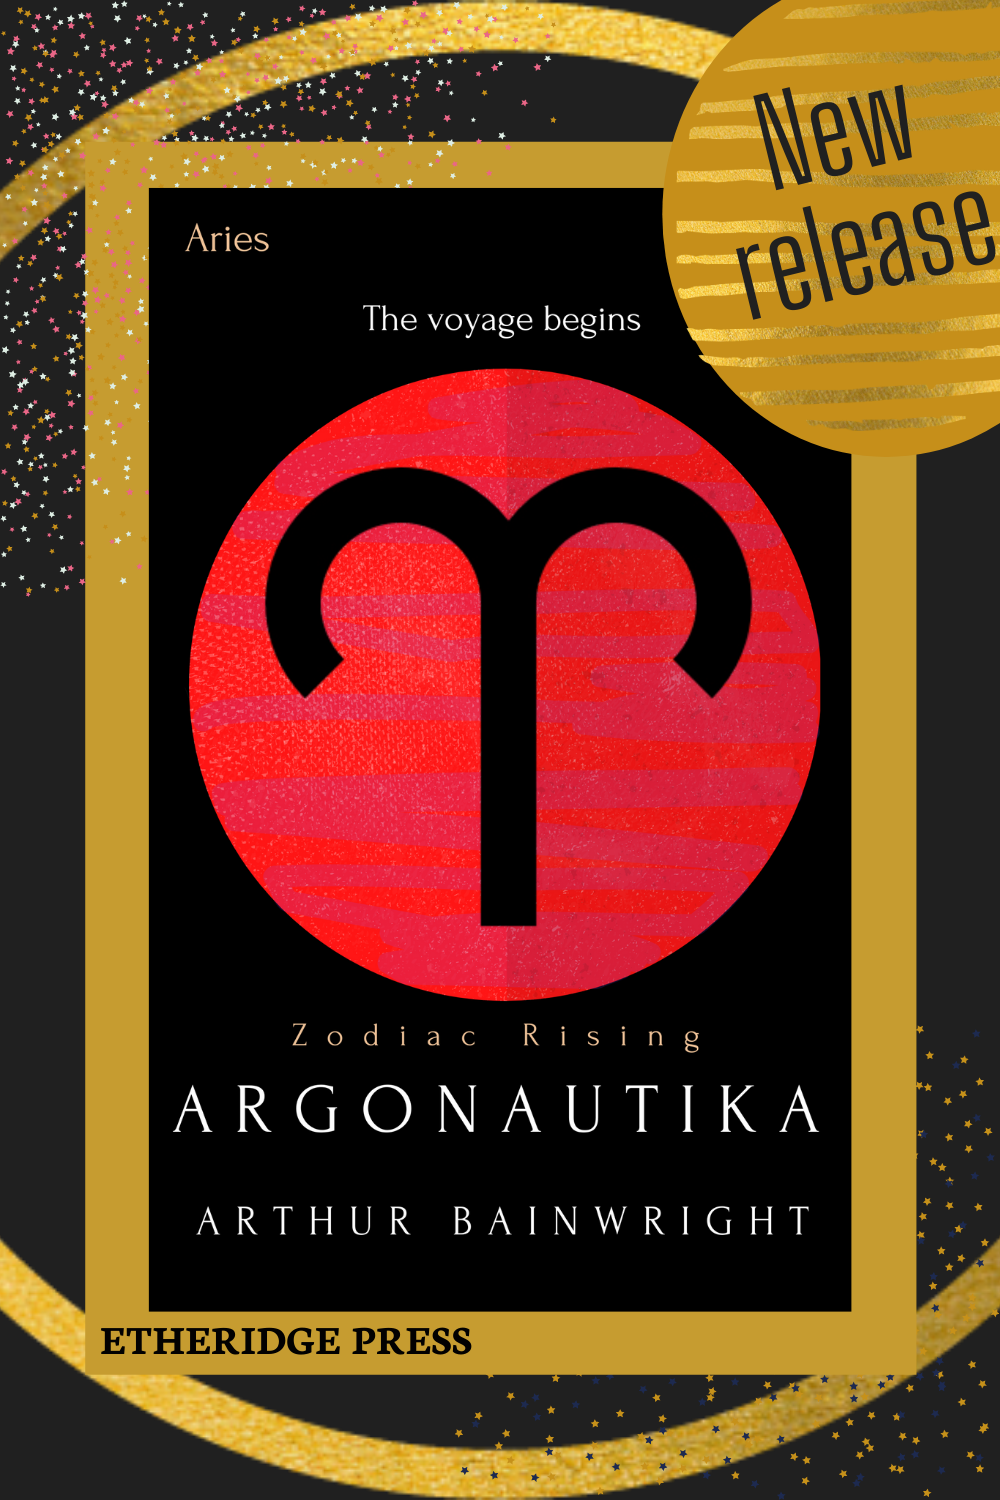 New Release: Argonautika